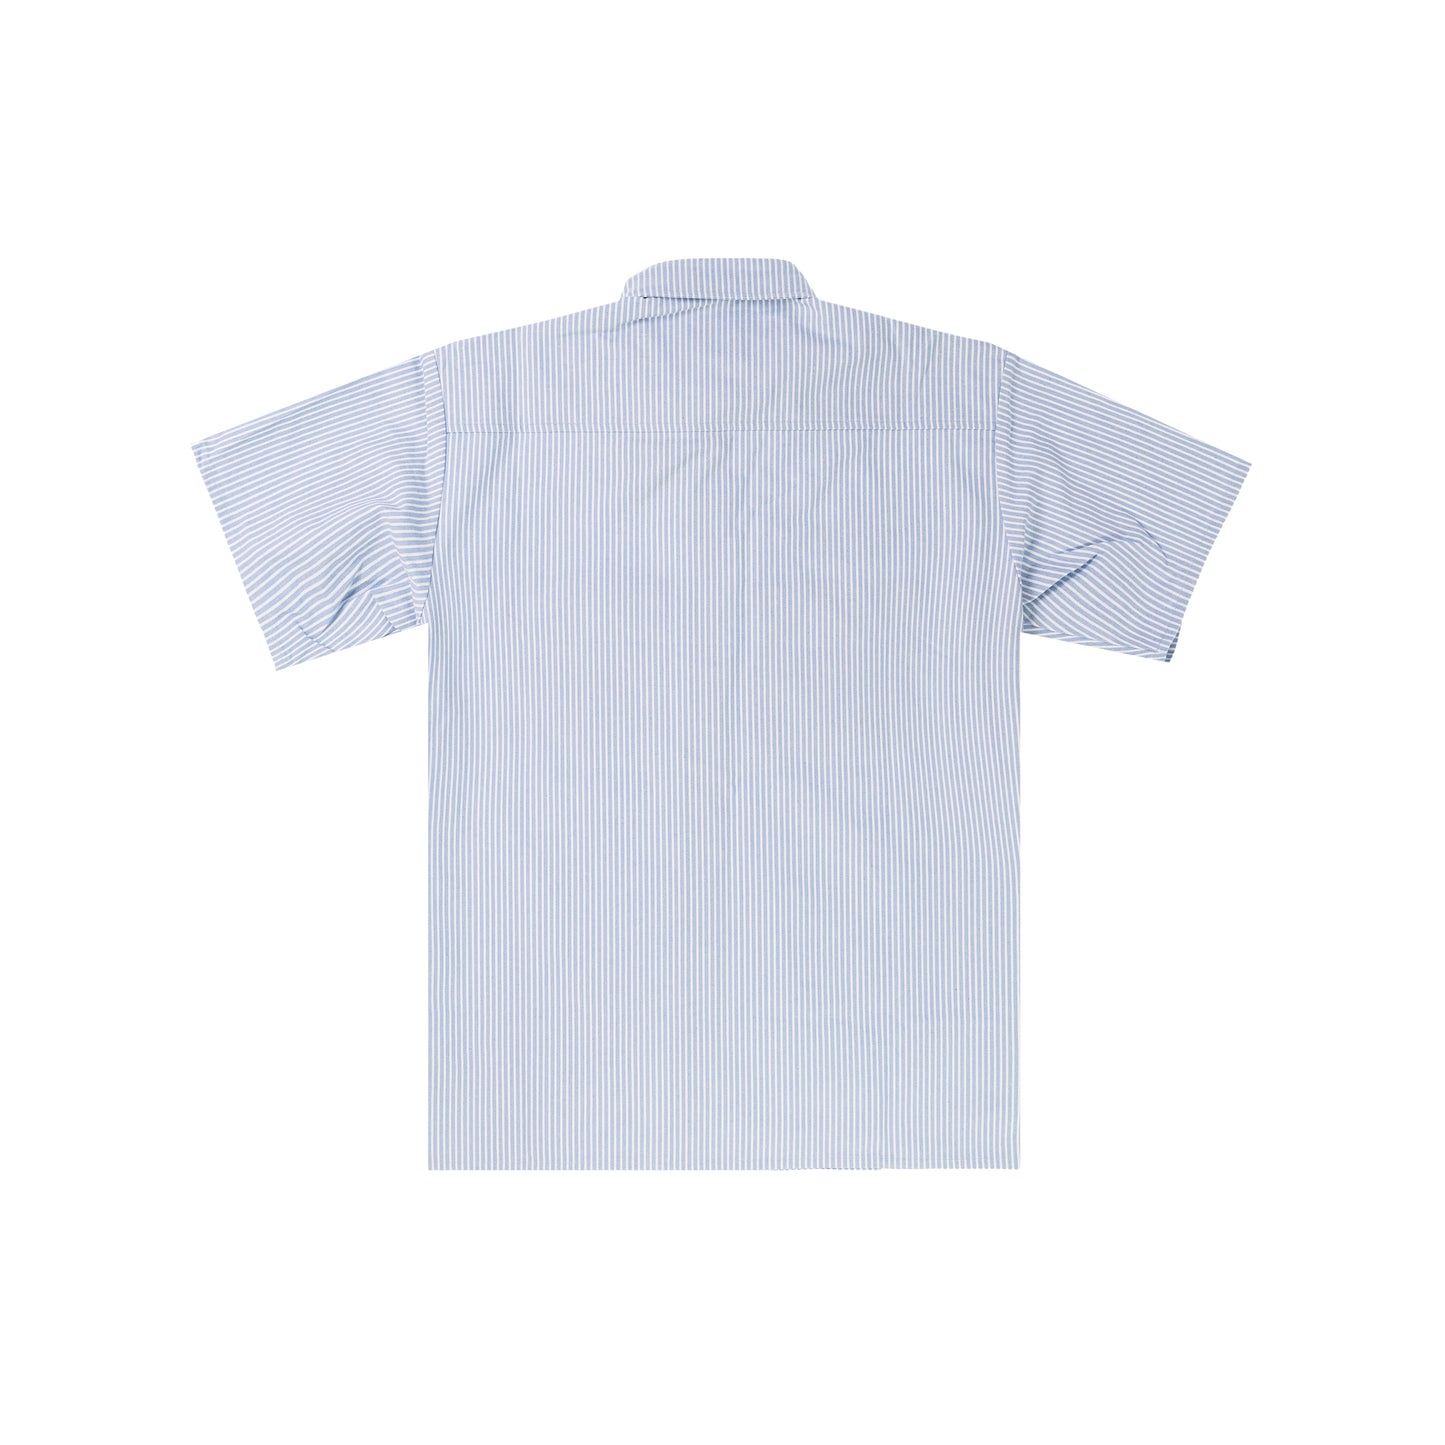 FELT - Mechanic Shirt - Blue & White